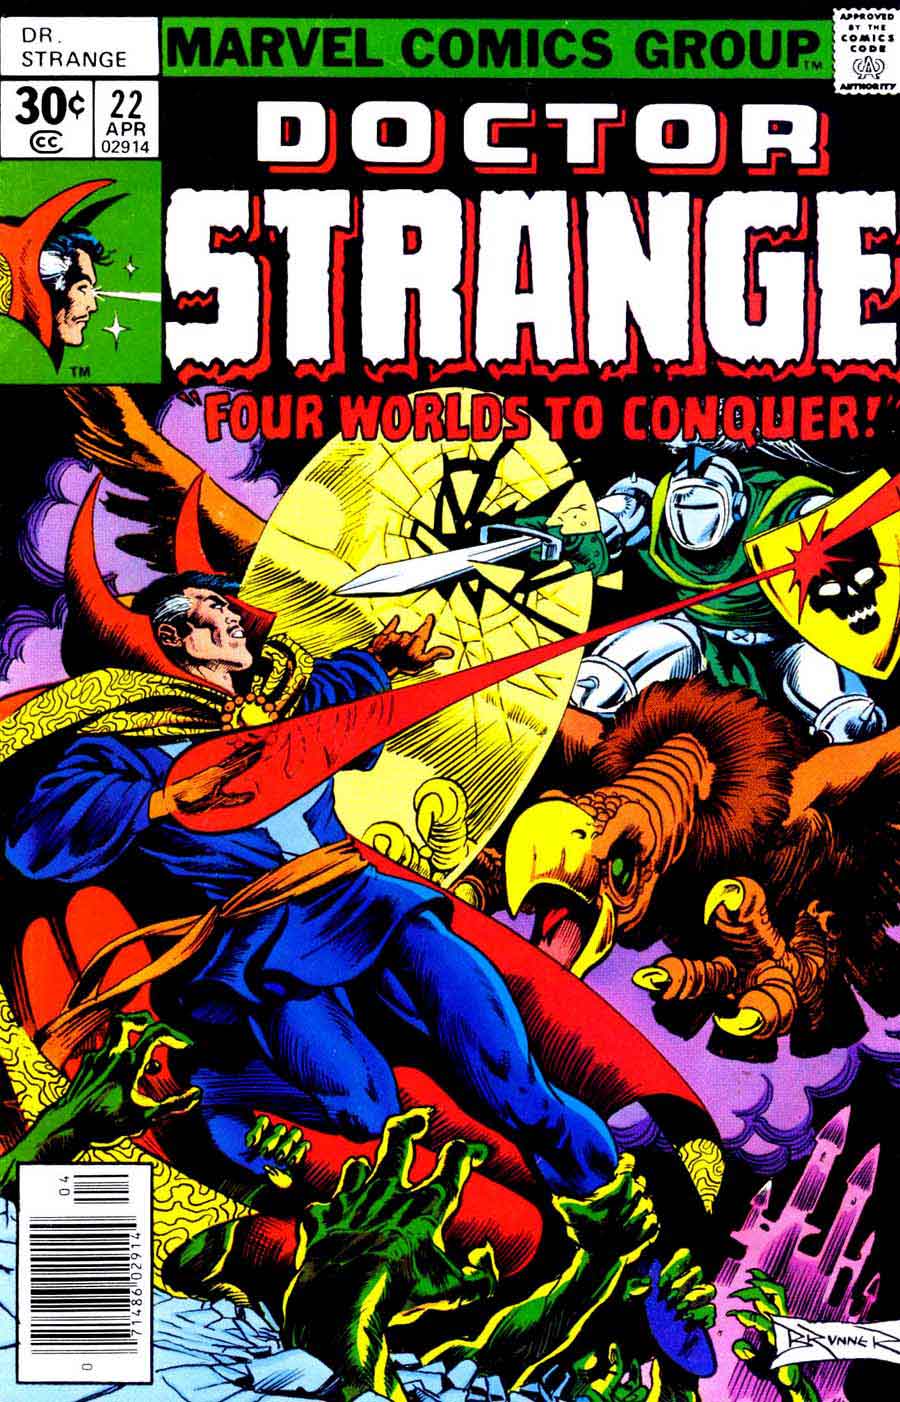 Frank Brunner  bronze age 1970s marvel comic book cover art - Doctor Strange v2 #22